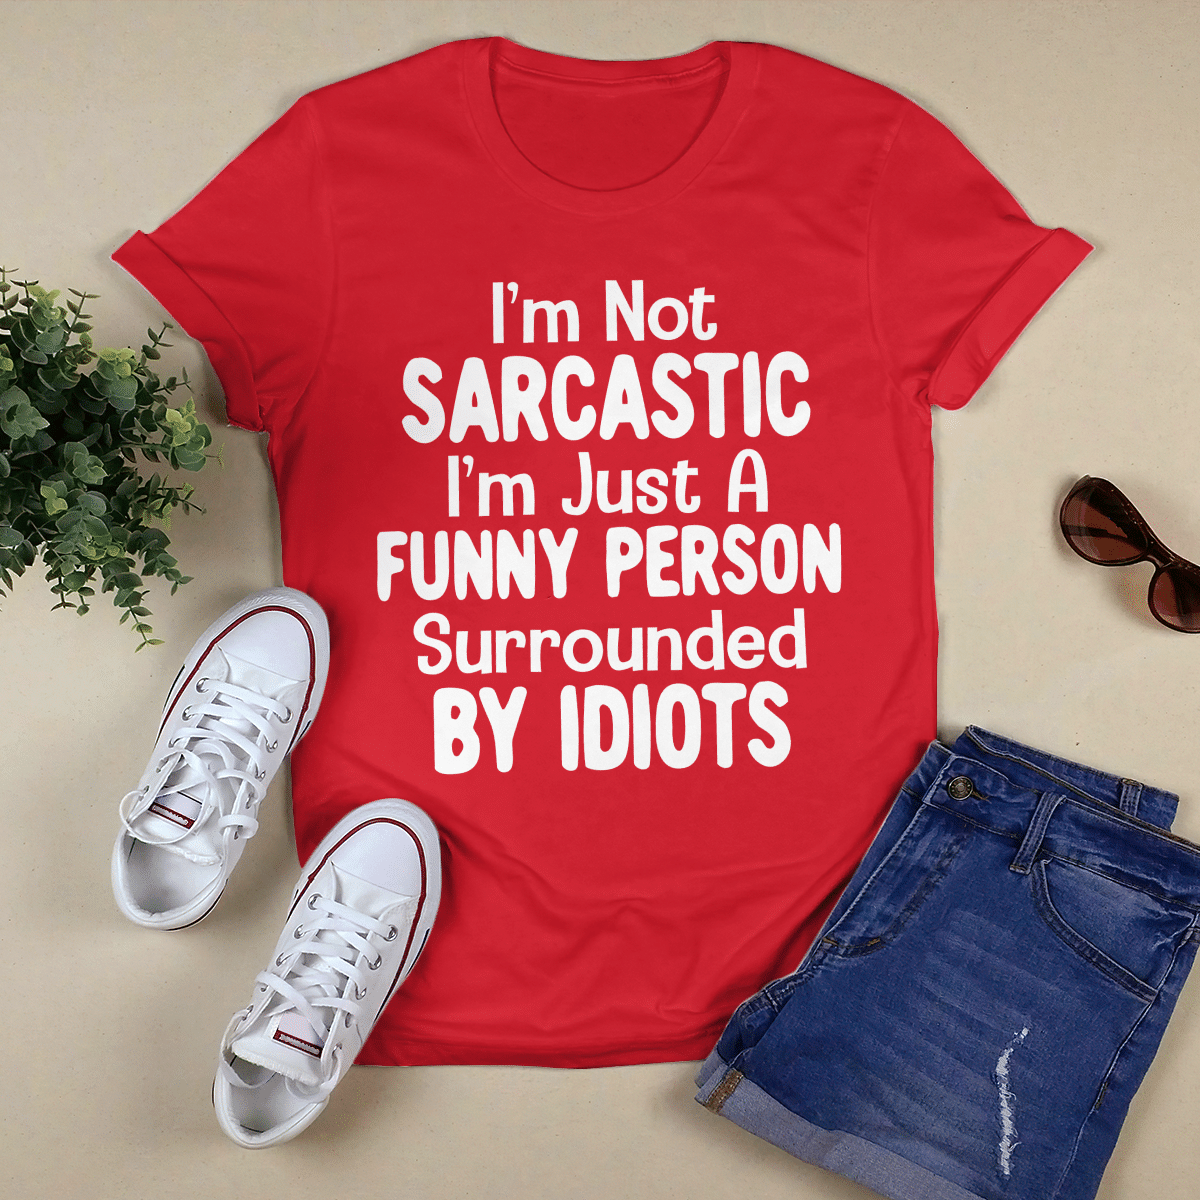 I_m Not Sarcastic shirt